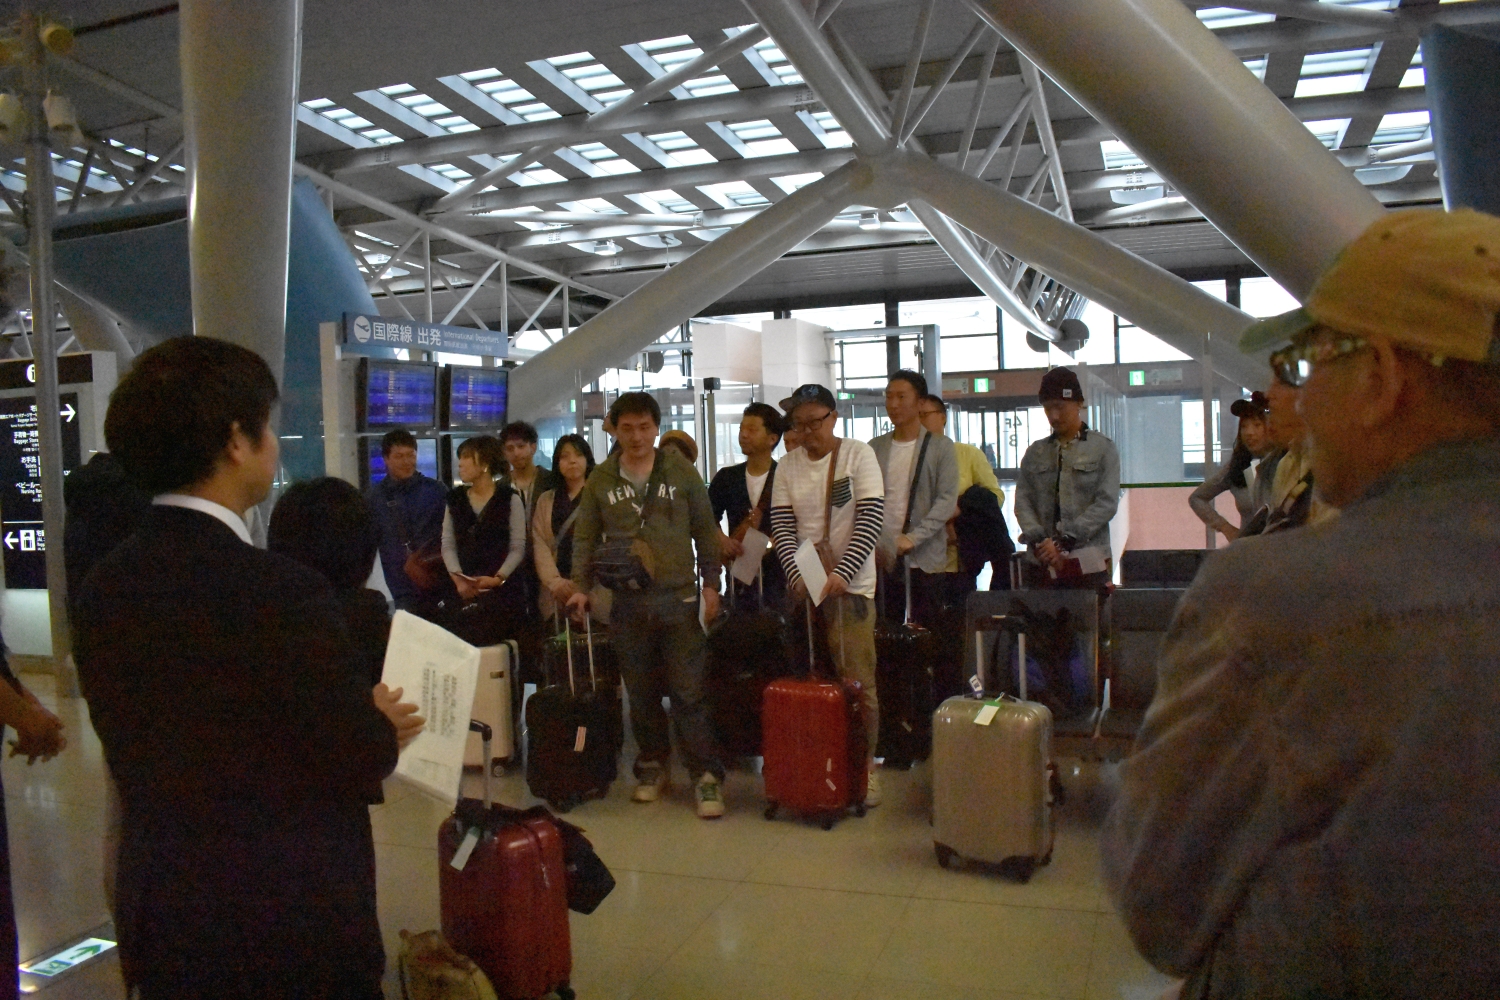 朝7:30に関西空港へ集合しました。これから韓国ｿｳﾙへと旅立ちます